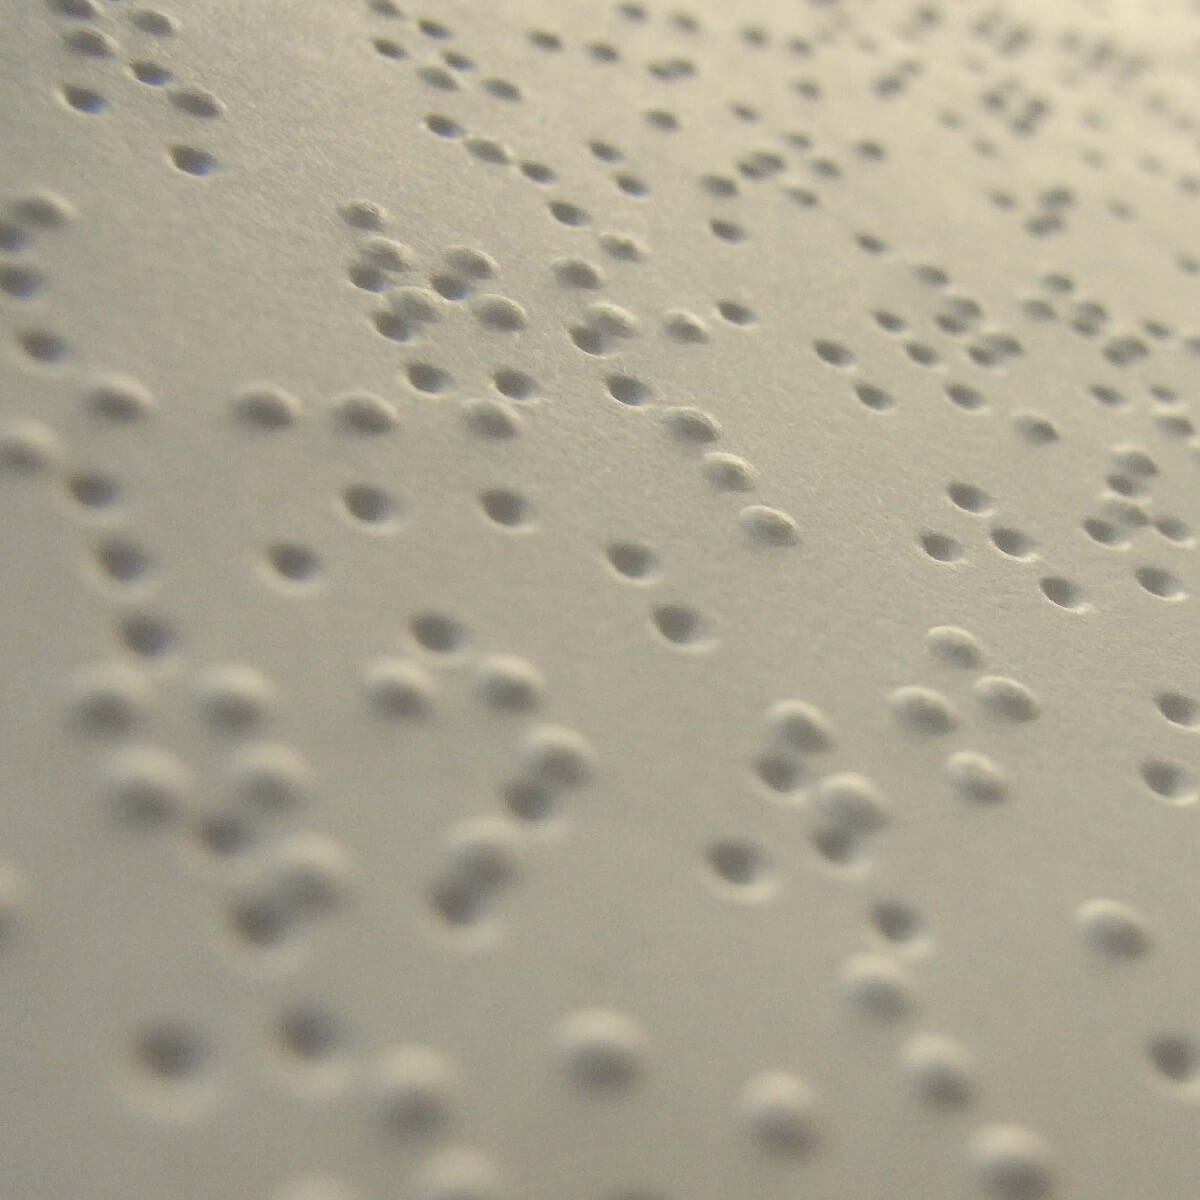 Braille Smartwatches